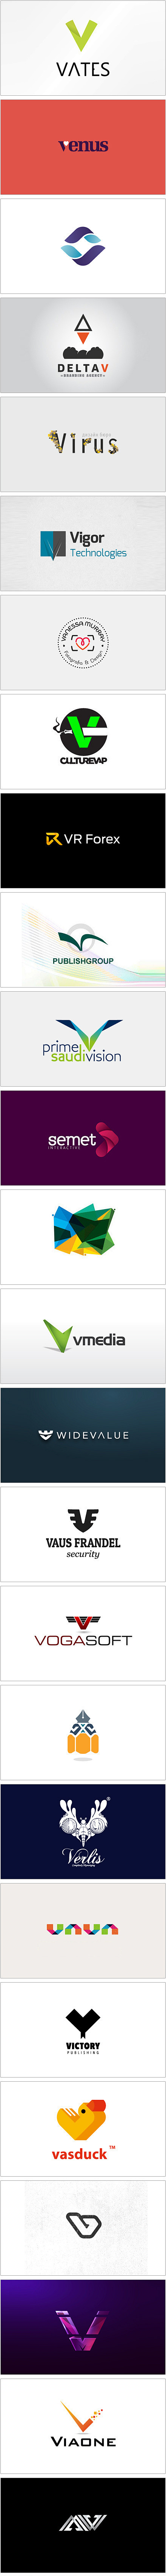 一组V型元素的Logo设计.jpg